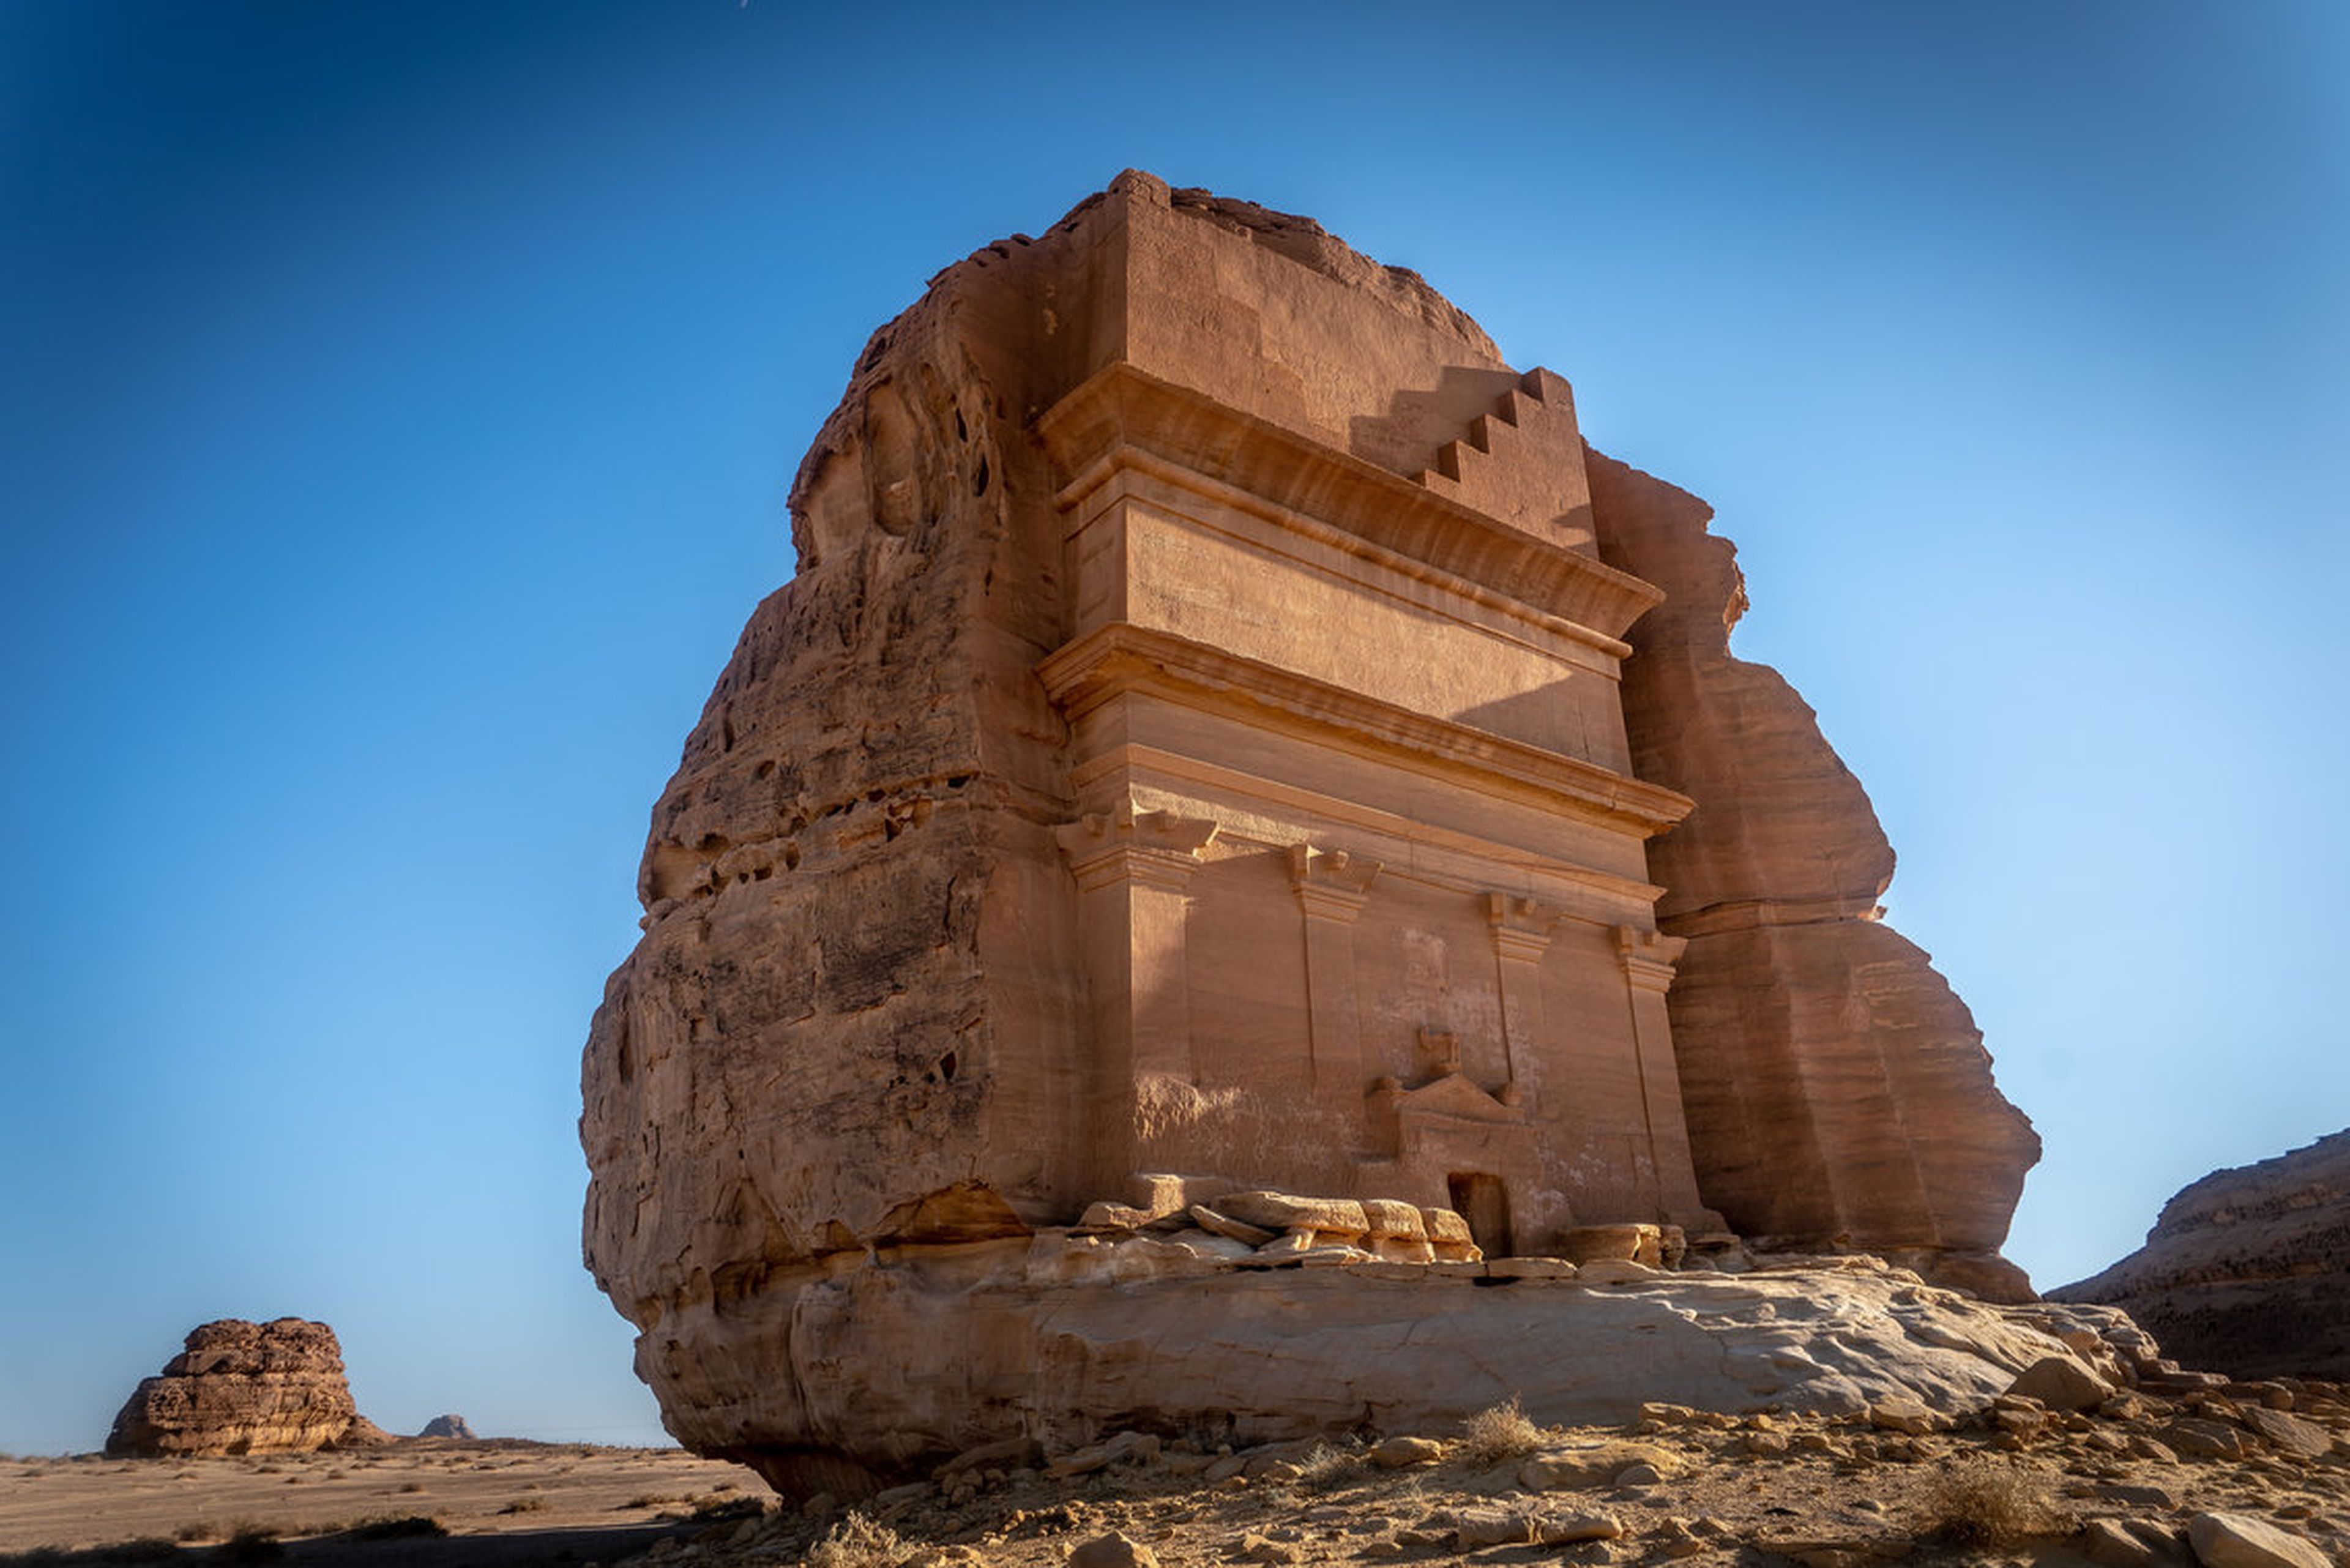 La UNESCO proclamó a Mada'in Saleh, Al Ula, como el primer sitio de Arabia Saudí Patrimonio de la Humanidad.